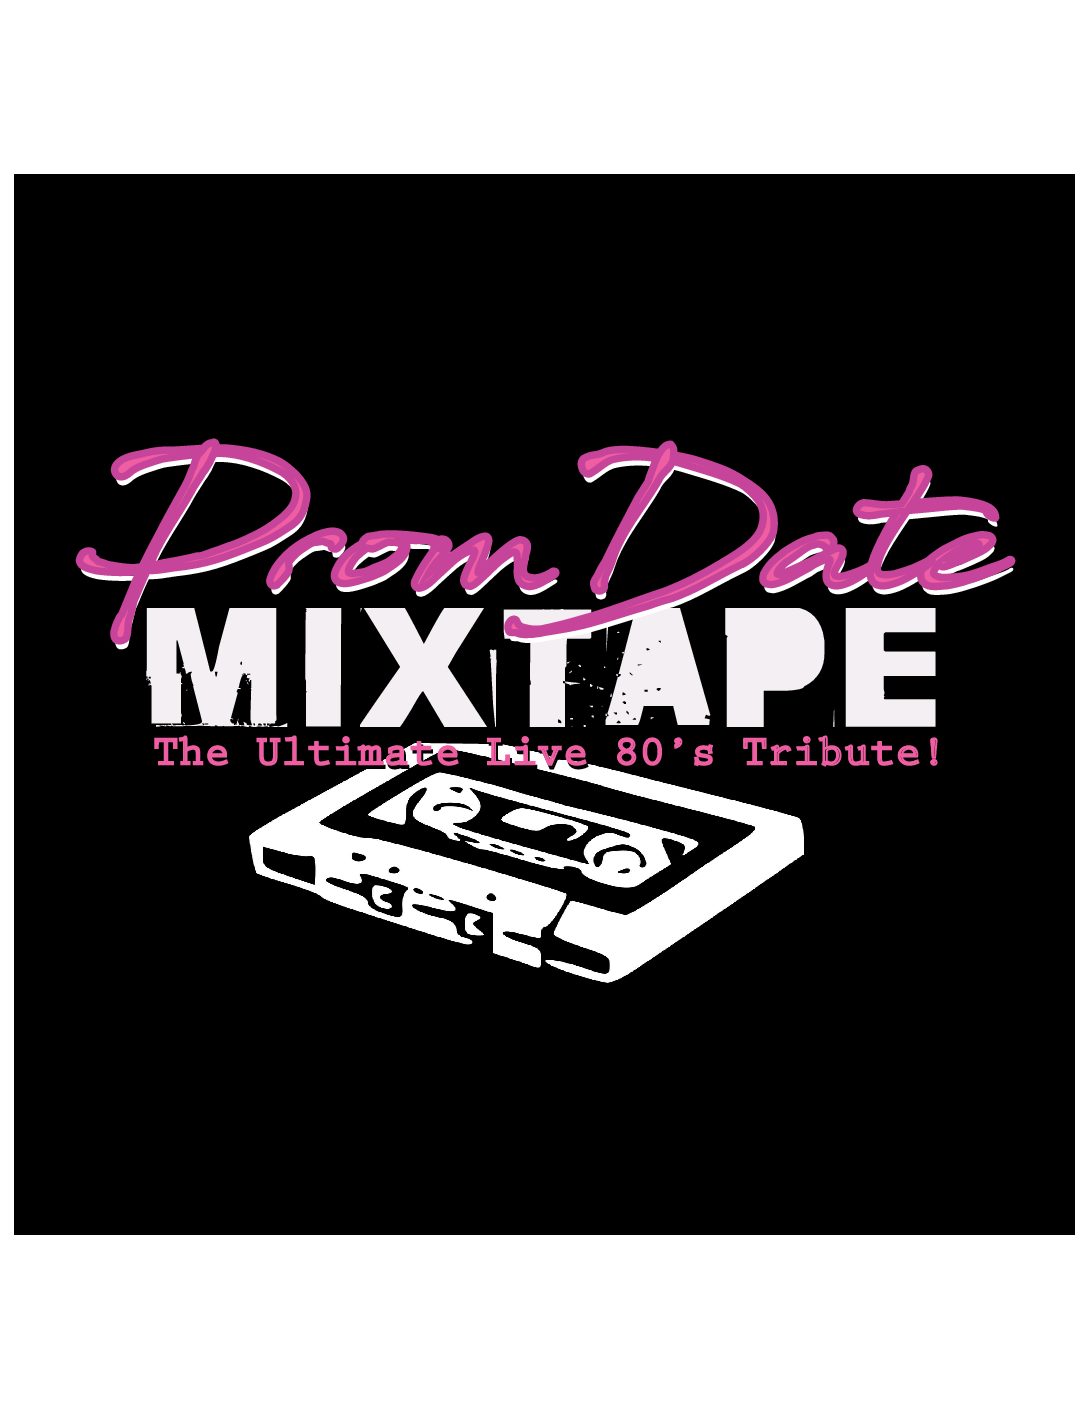 Prom Date Mixtape